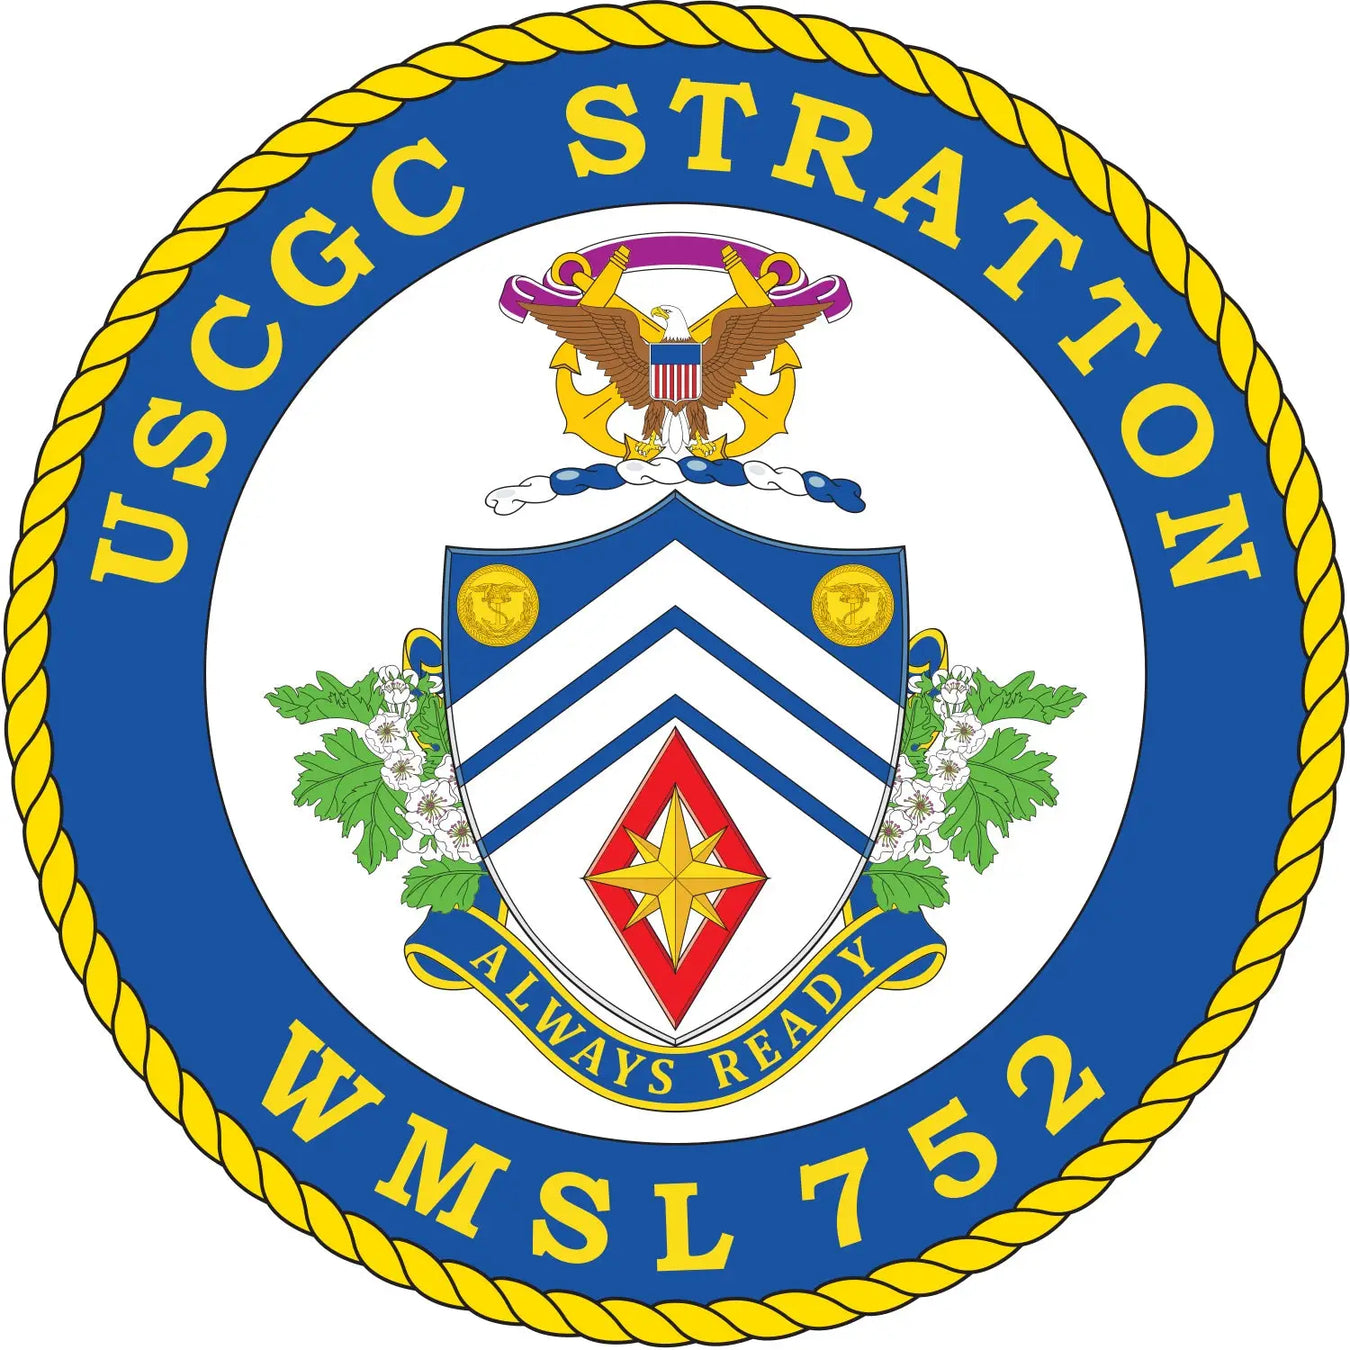 USCGC Stratton (WMSL-752)